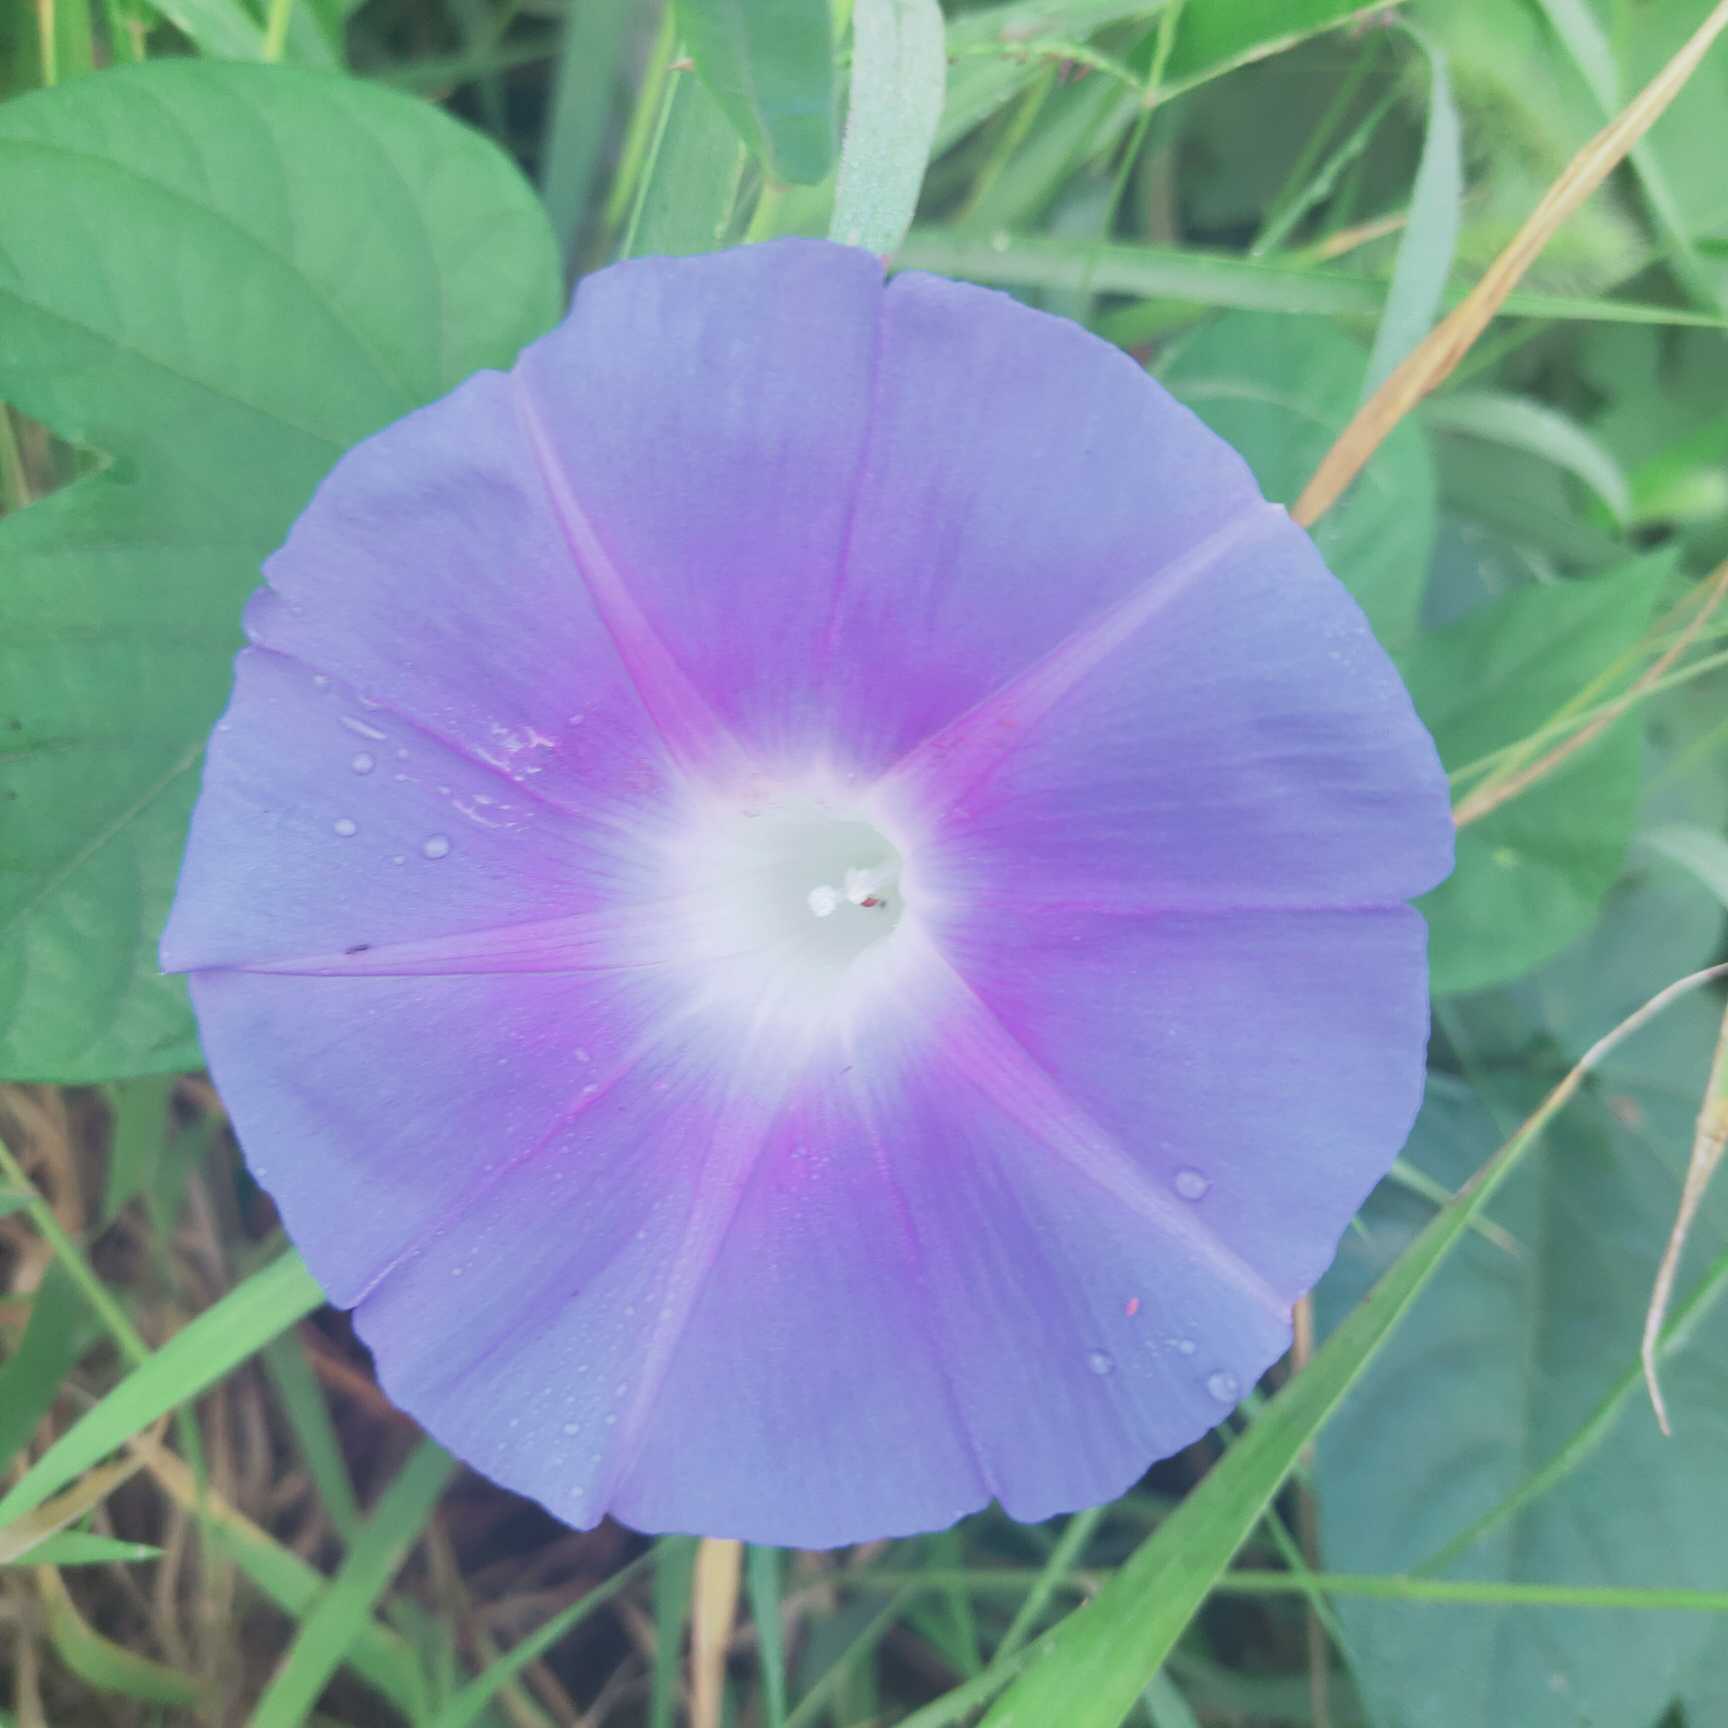 类似喇叭花的紫色花图片